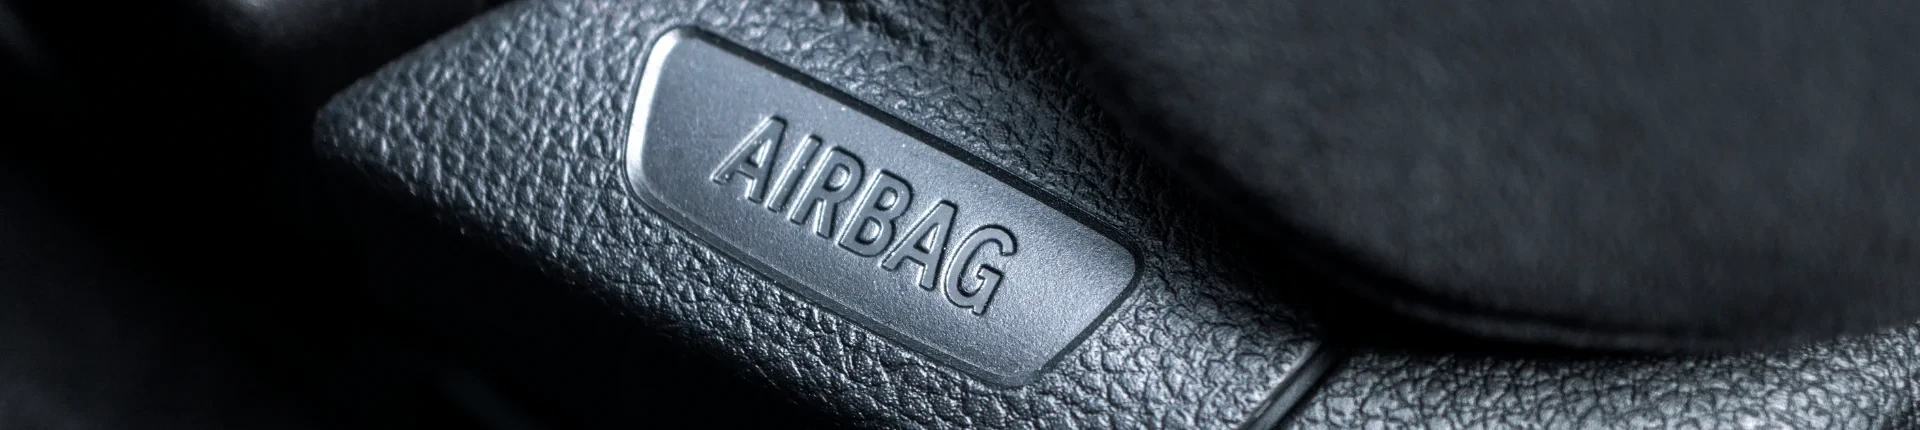 Airbag (Hava Yastığı) Nedir?